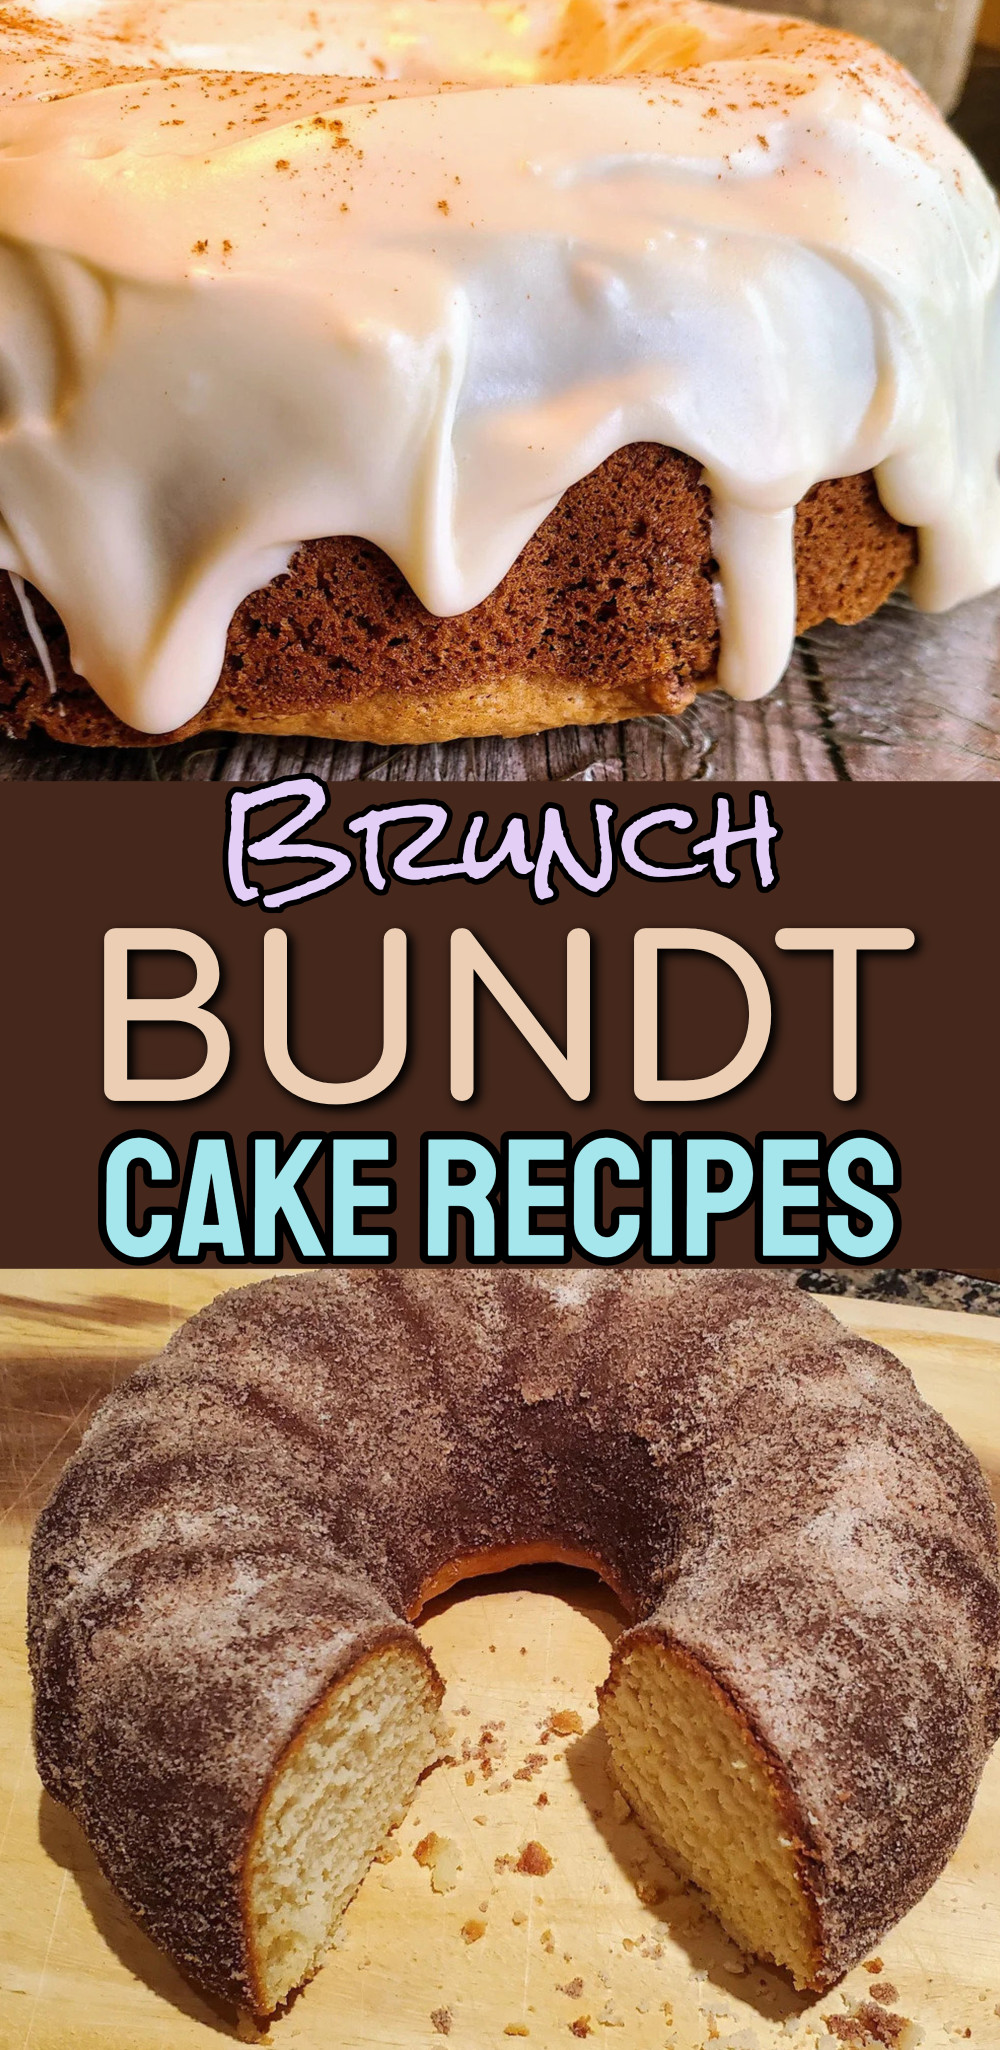 Brunch Bundt Cake Recipes